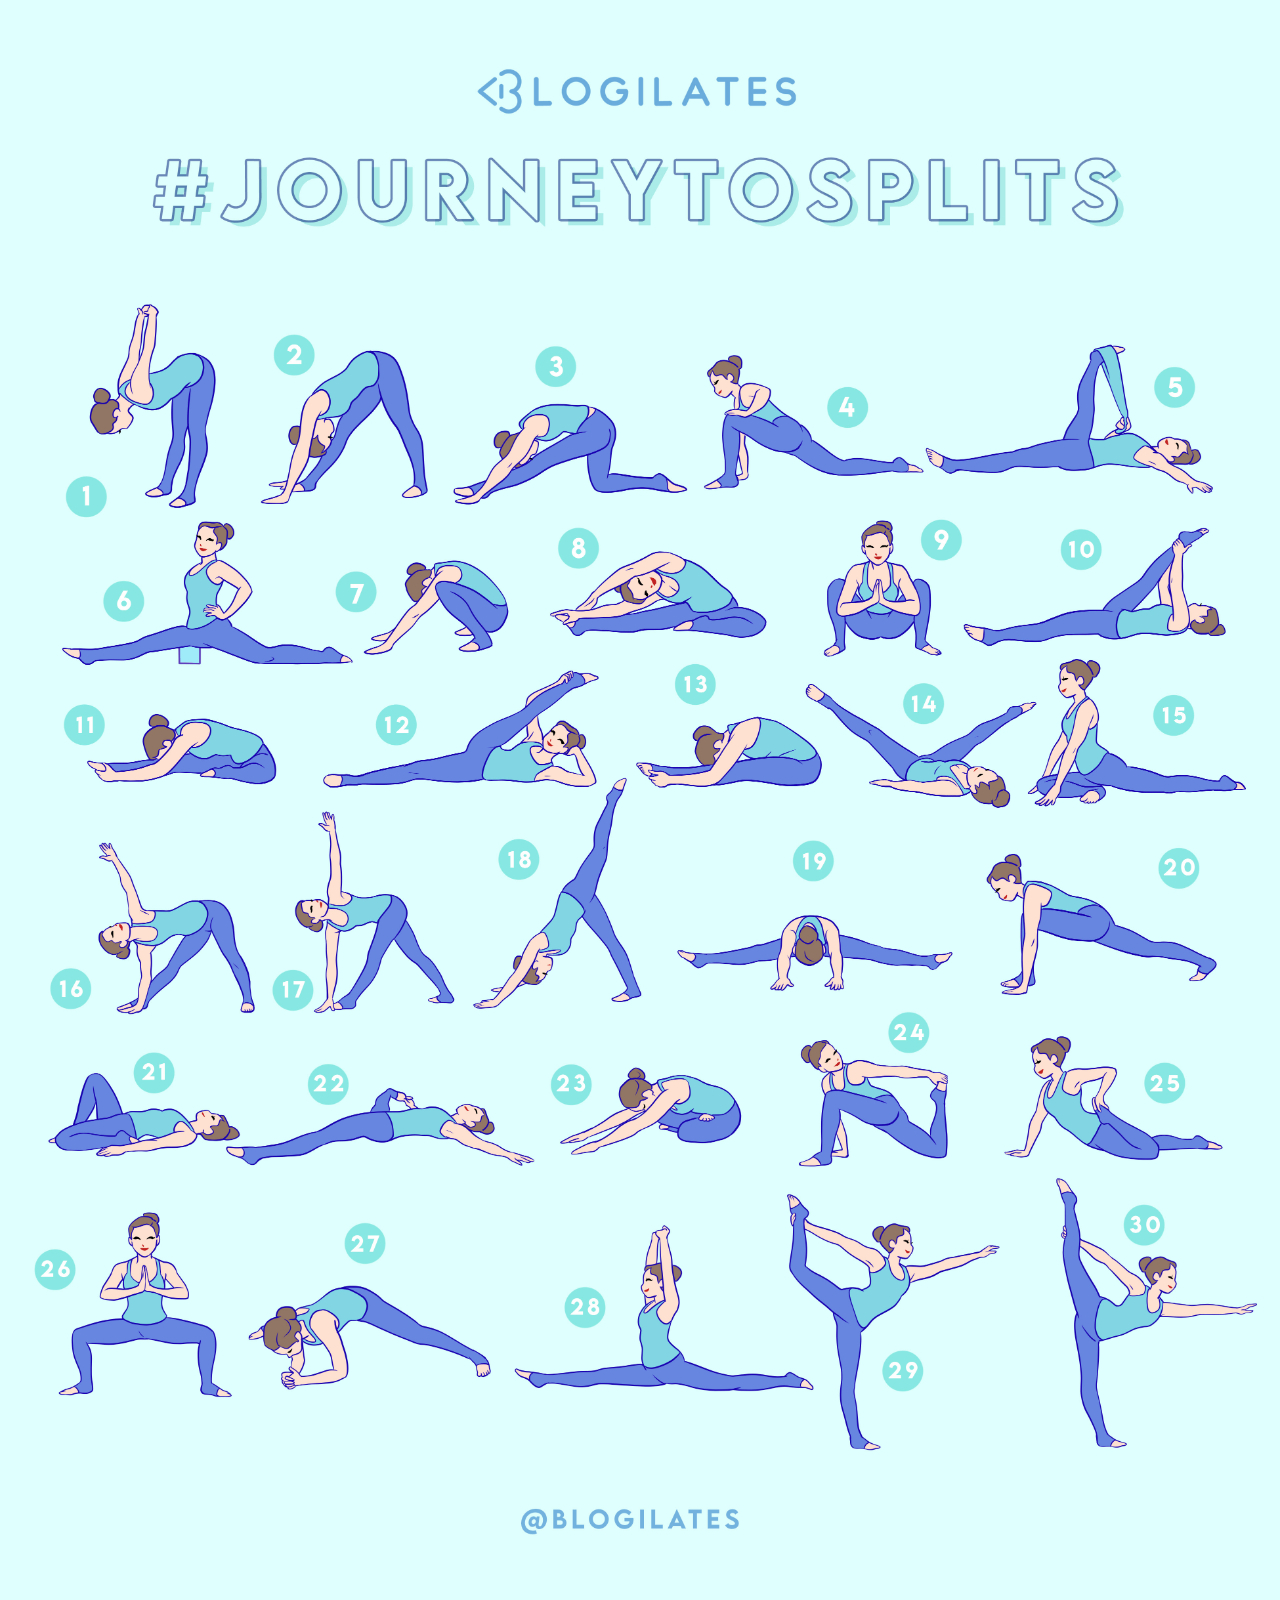 30 Days & 30 Stretches to Splits! #JourneytoSplits - Blogilates